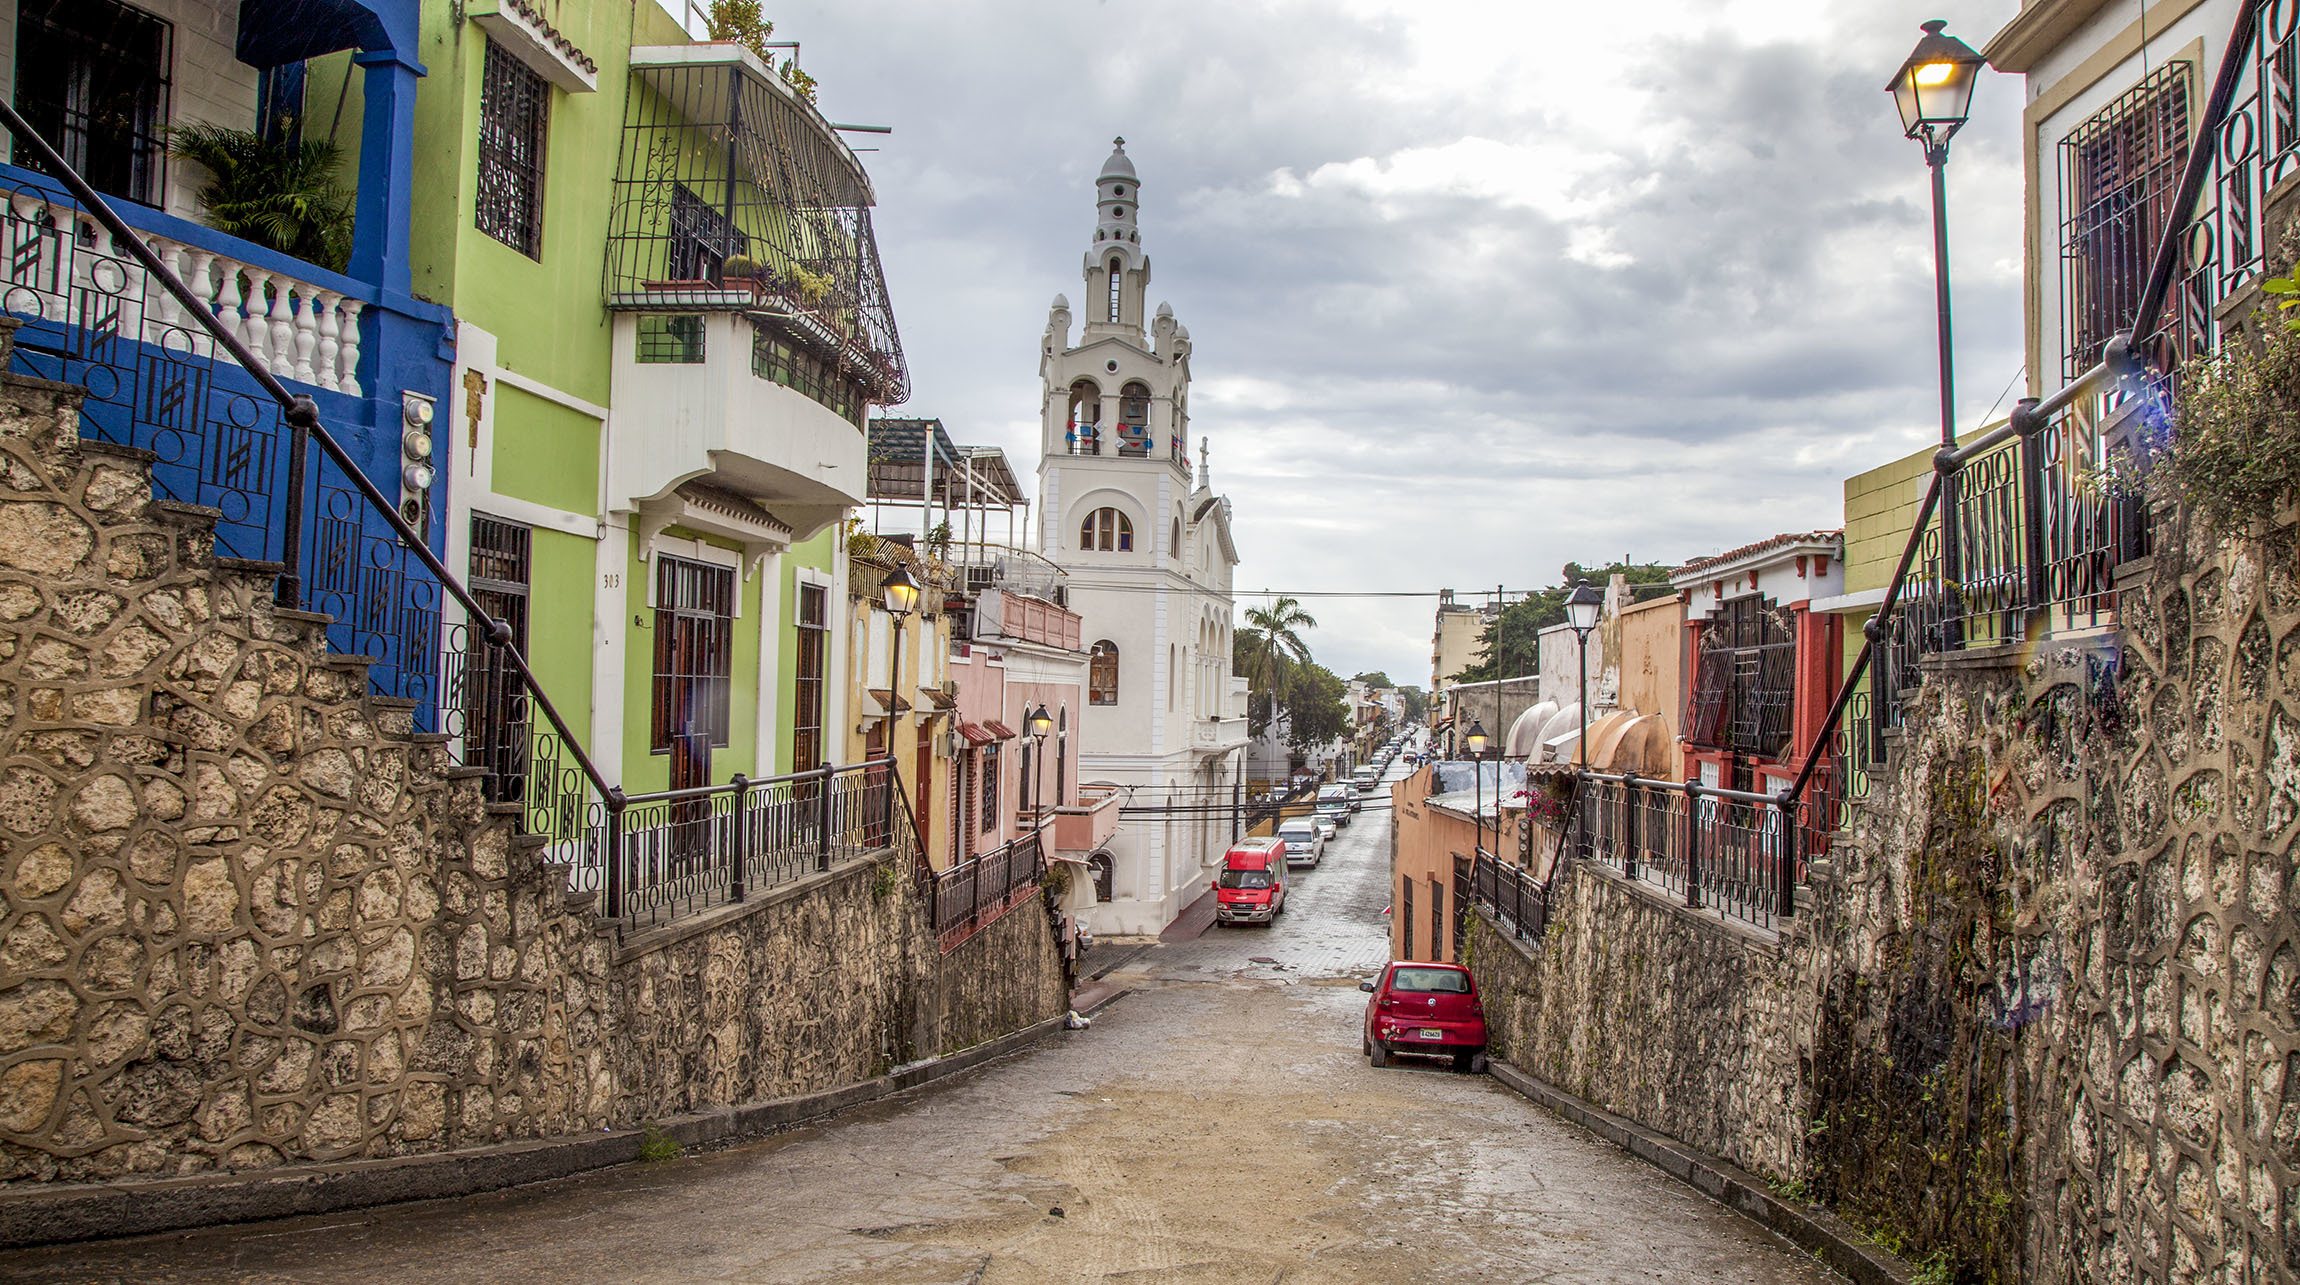 A colourful street in Zona Colonial Santo Domingo Dominican Republic